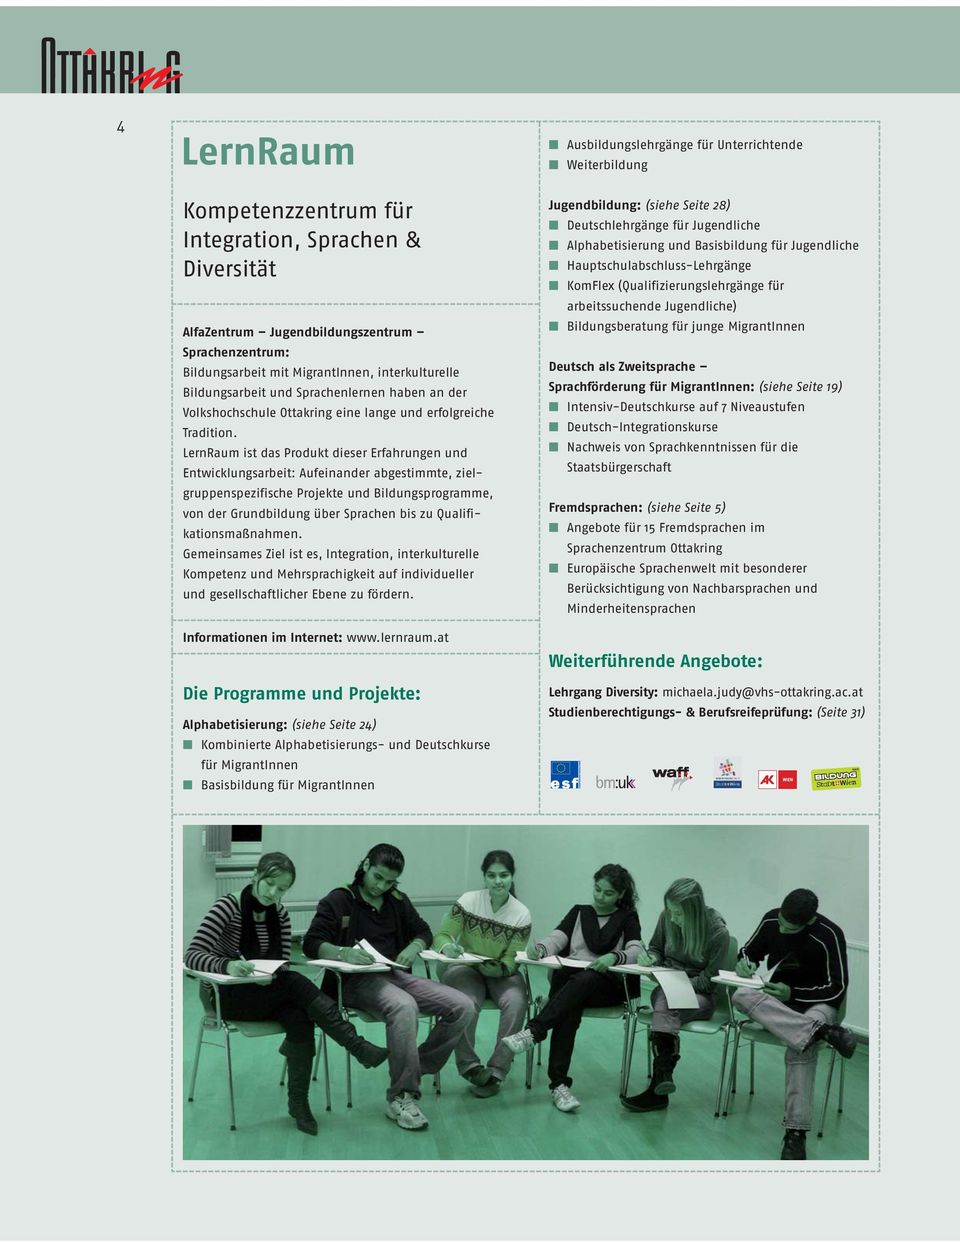 LernRaum ist das Produkt dieser Erfahrungen und Entwicklungsarbeit: Aufeinander abgestimmte, zielgruppenspezifische Projekte und Bildungsprogramme, von der Grundbildung über Sprachen bis zu